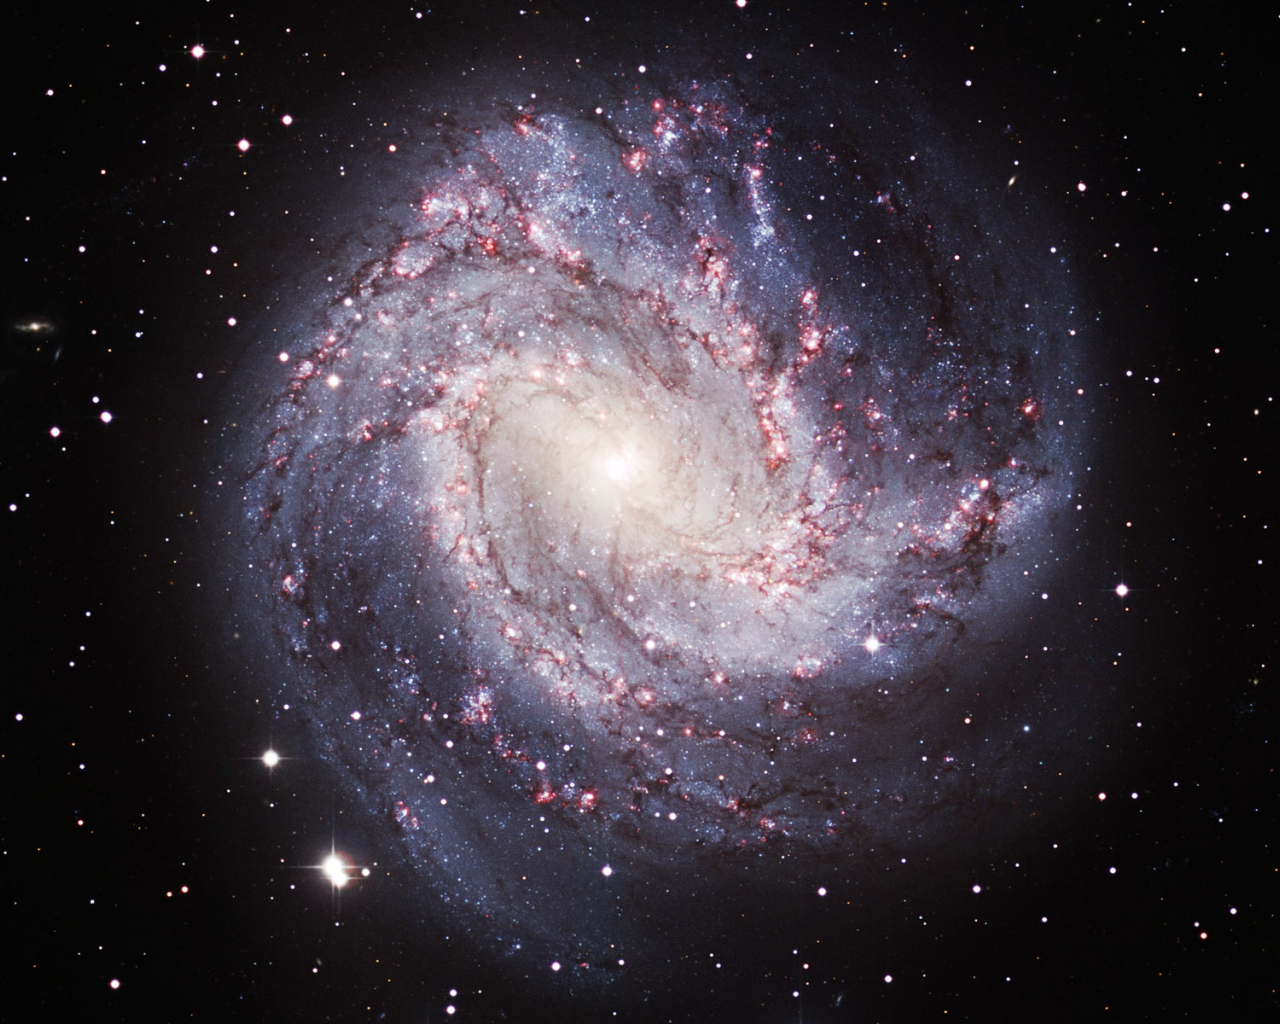 Спиральная галактика М83